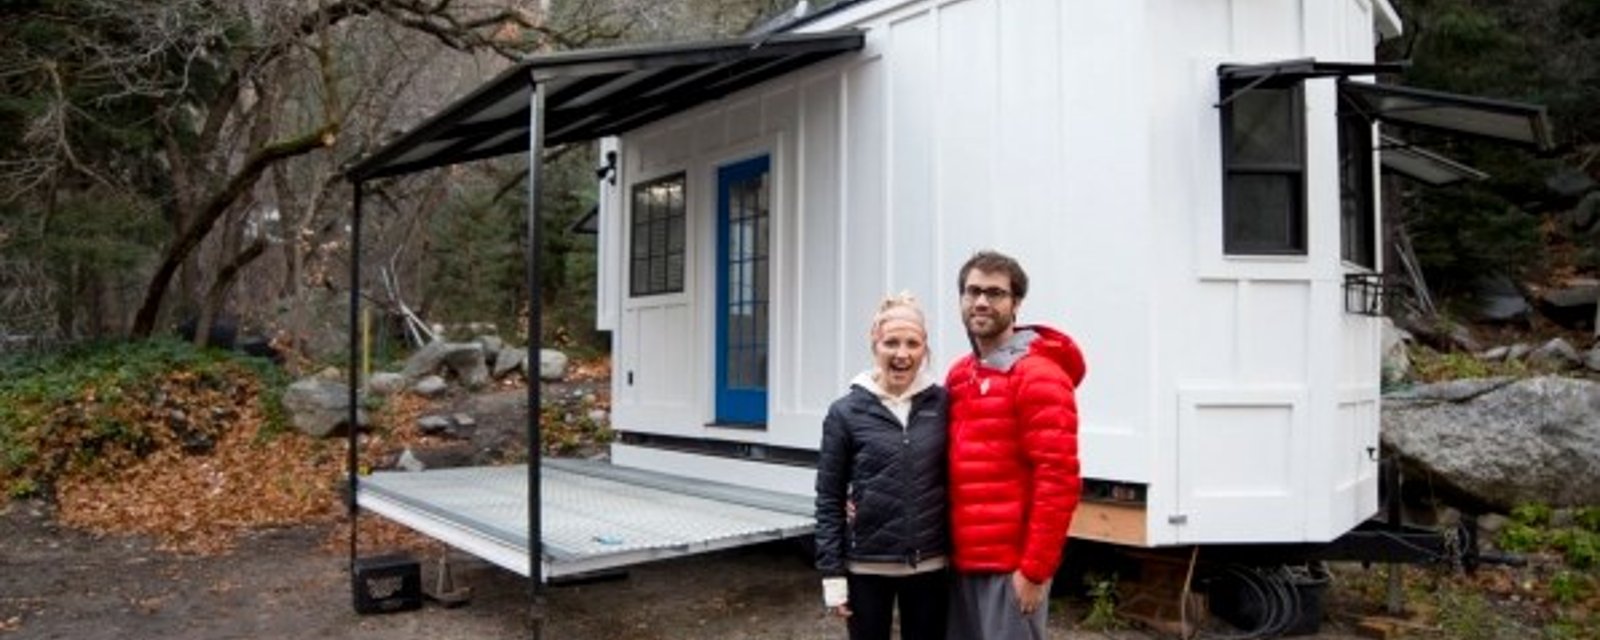 Un couple construit une mini-maison à partir de rien et le résultat surpasse nos attentes